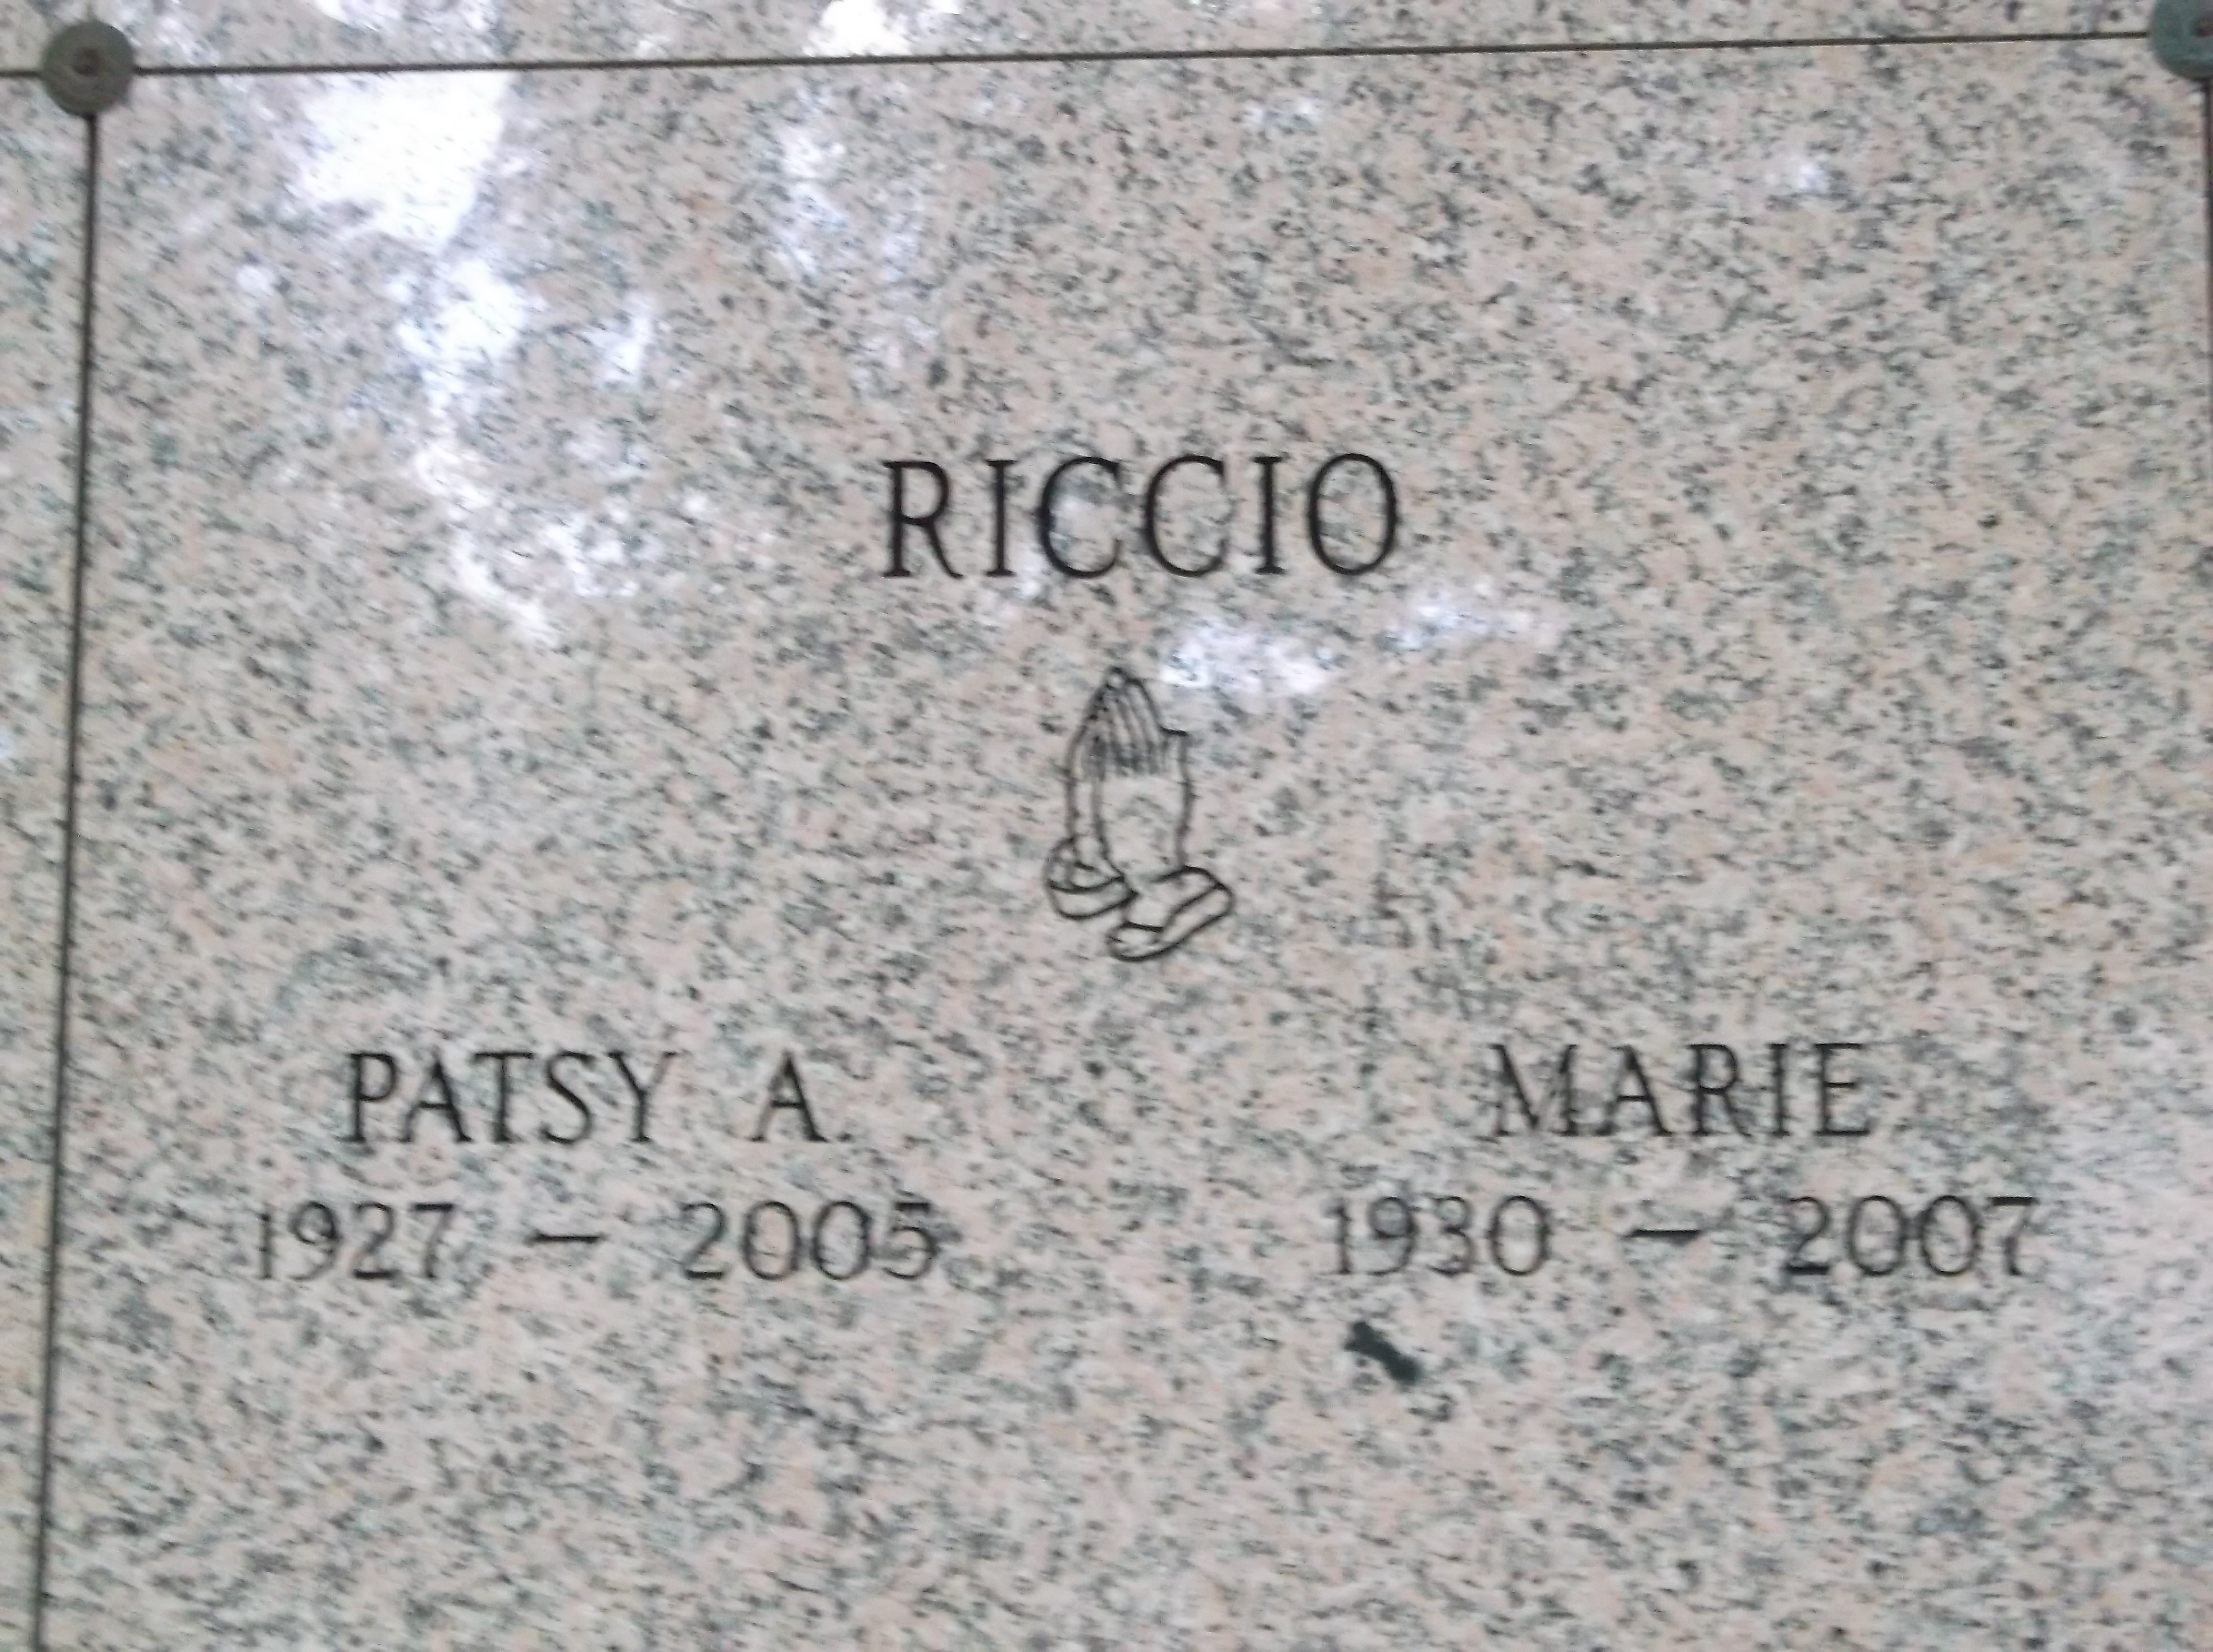 Patsy A Riccio